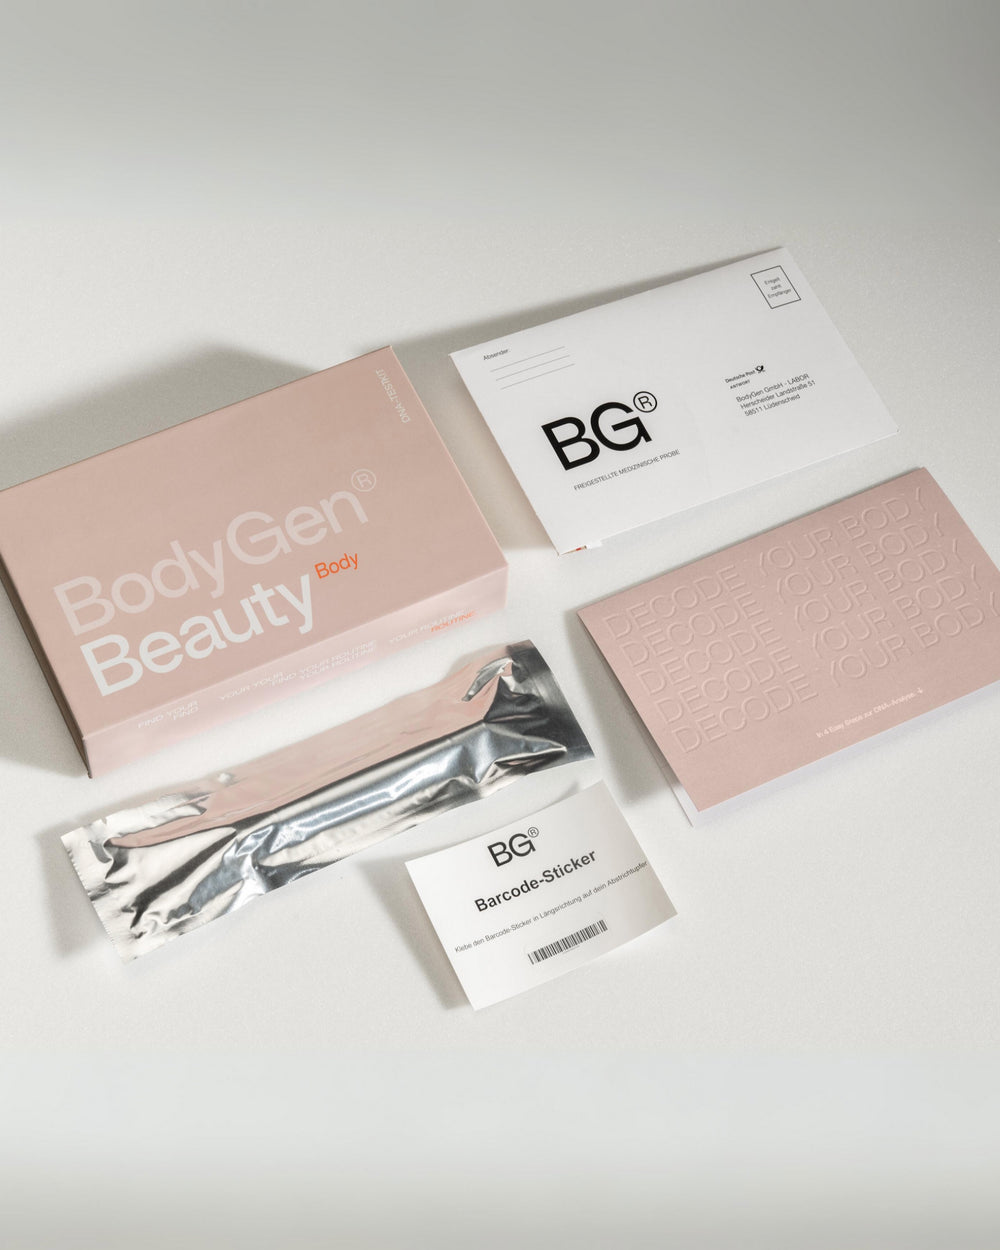 BodyGen Beauty Body DNA Test Kit mit ausgebreitetem Inhalt 